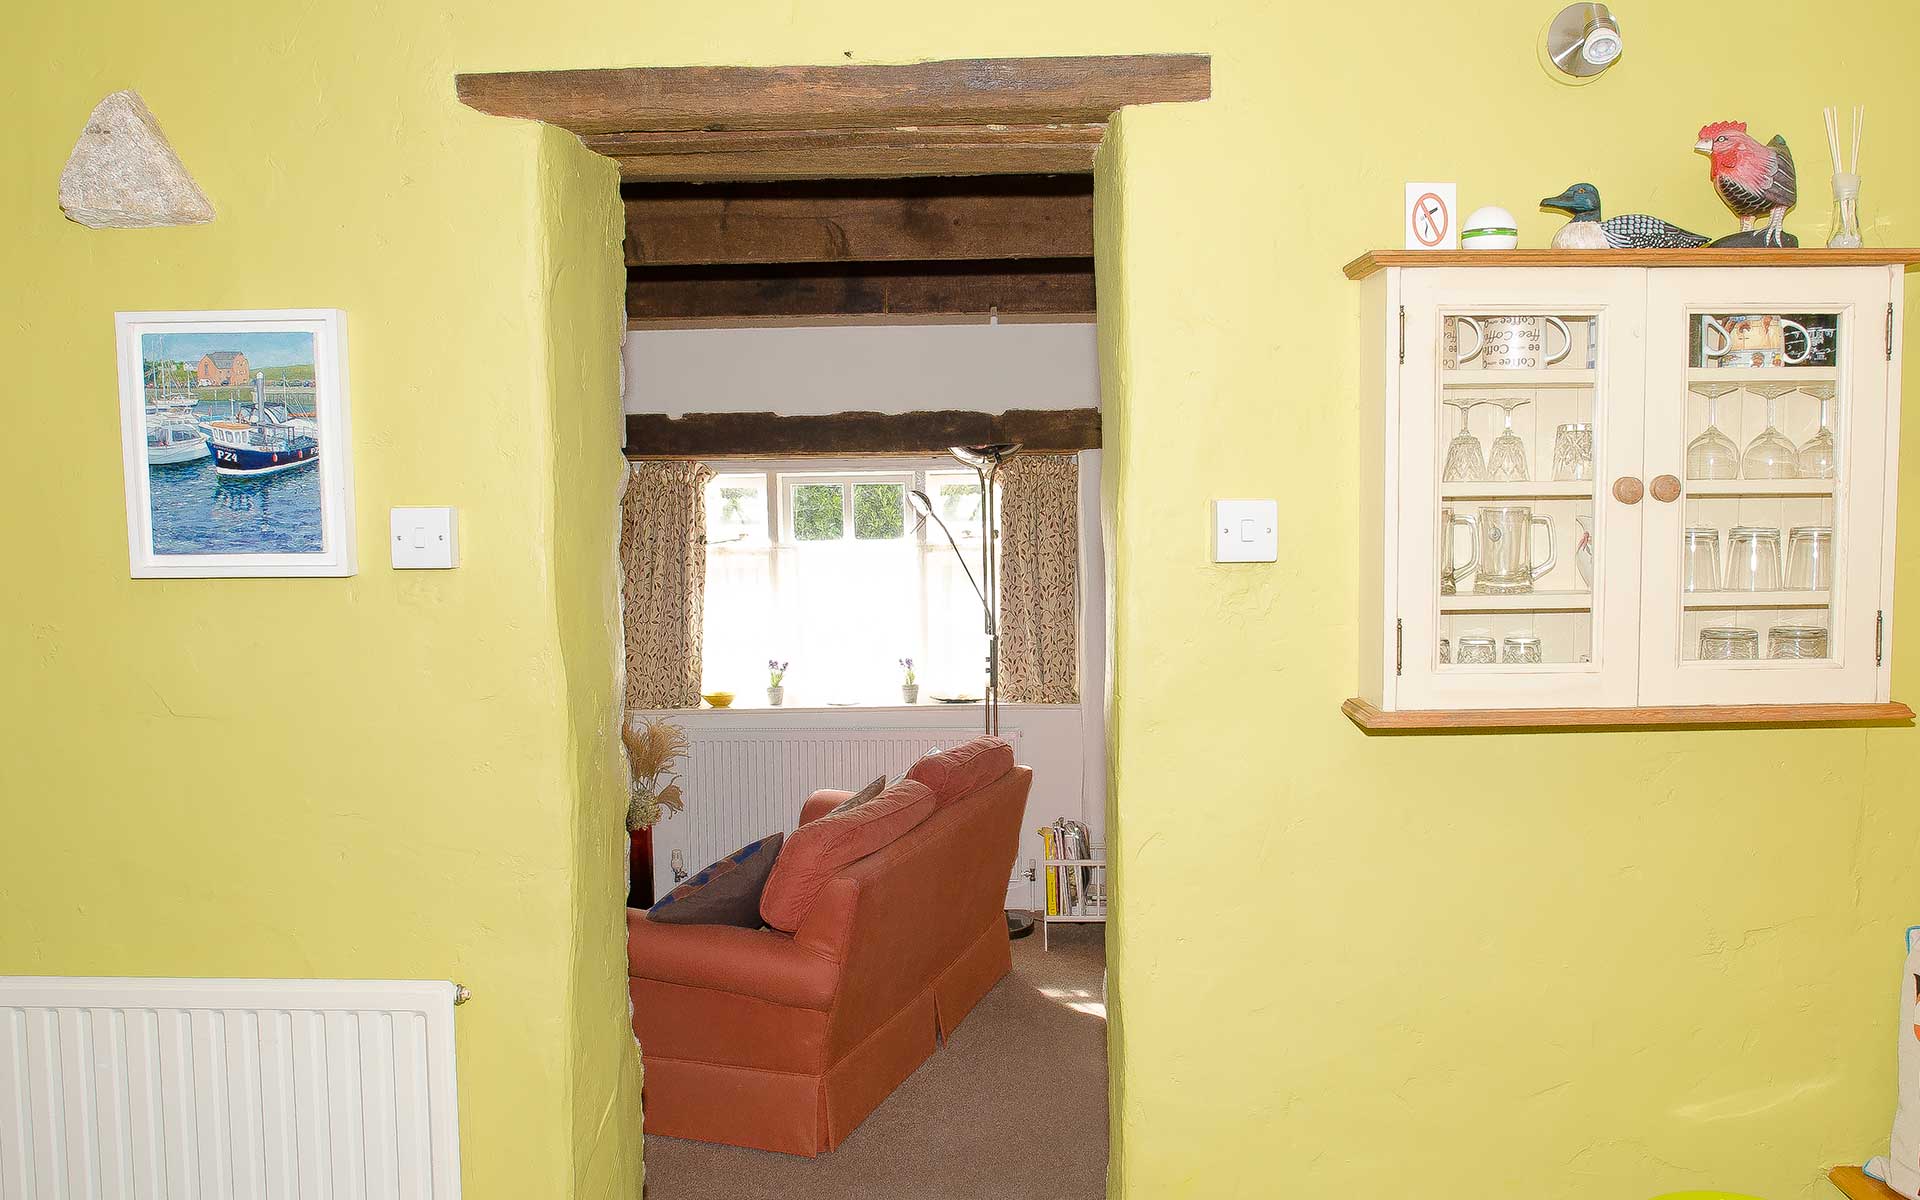 Walhalla Cottage interior